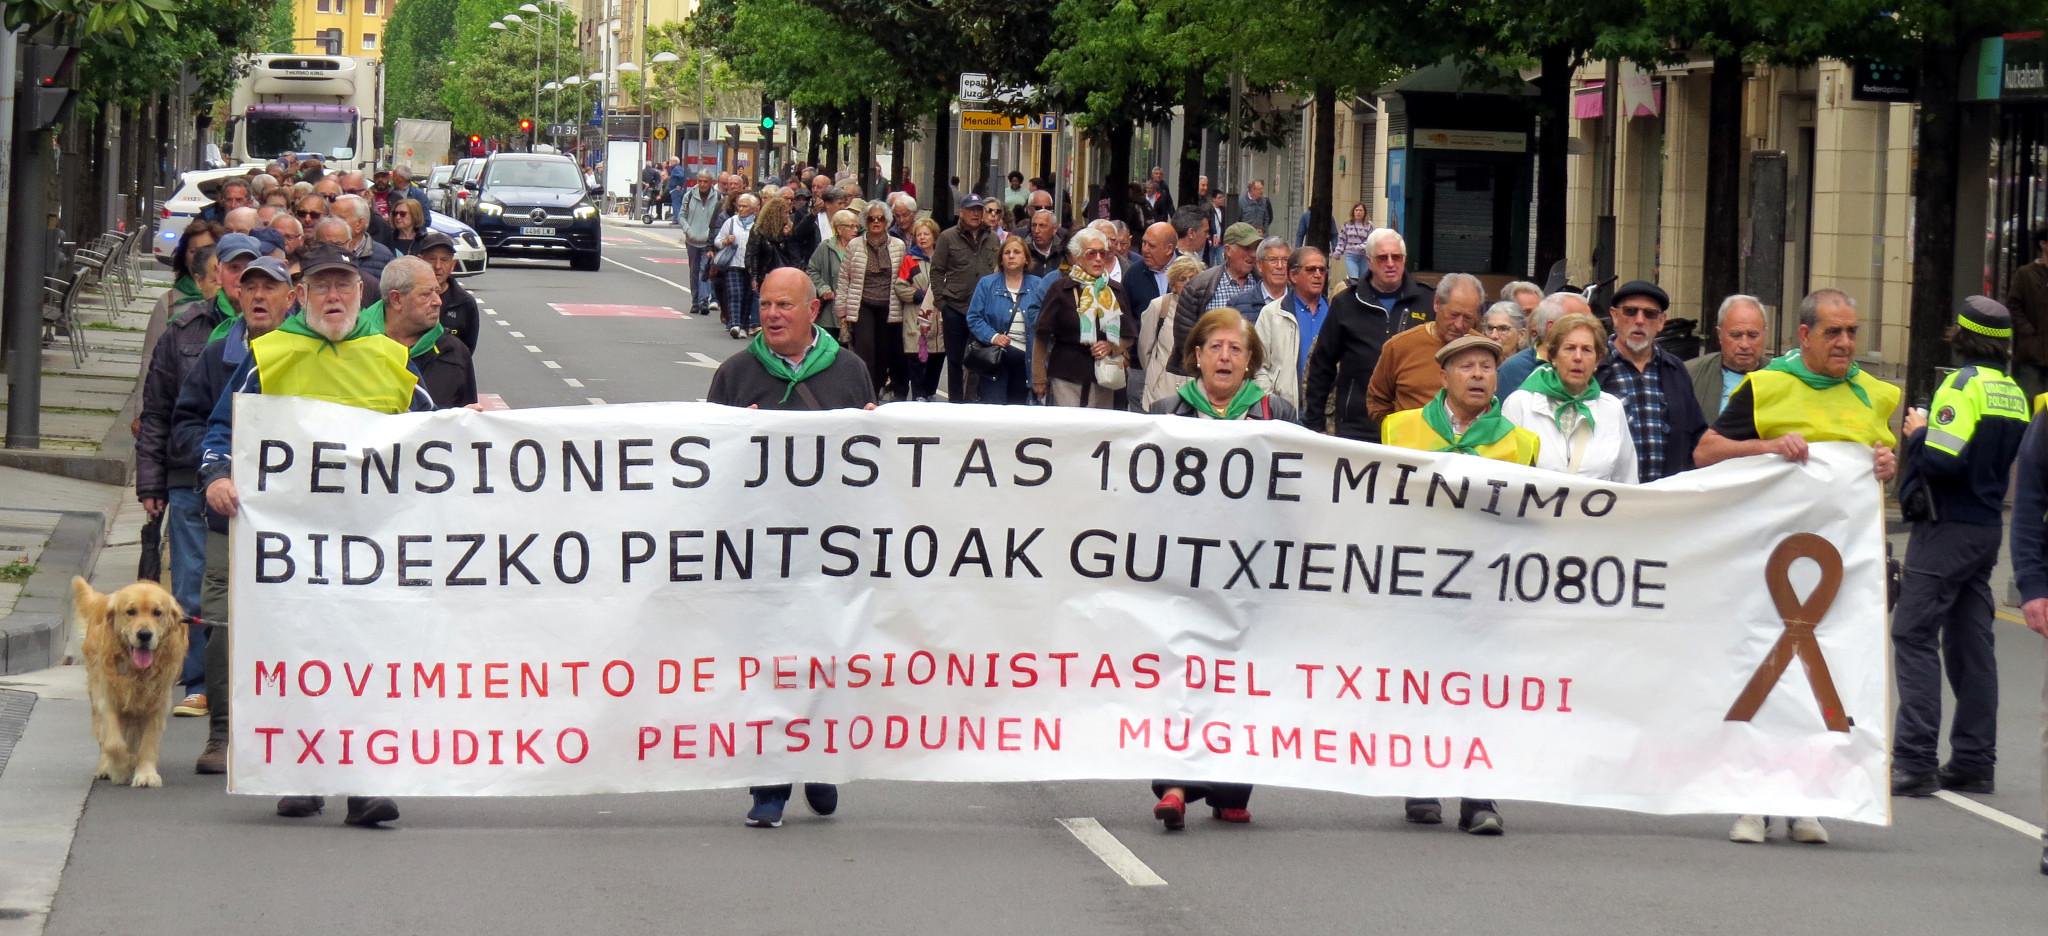 1 de Mayo Manifestación Pensionistas